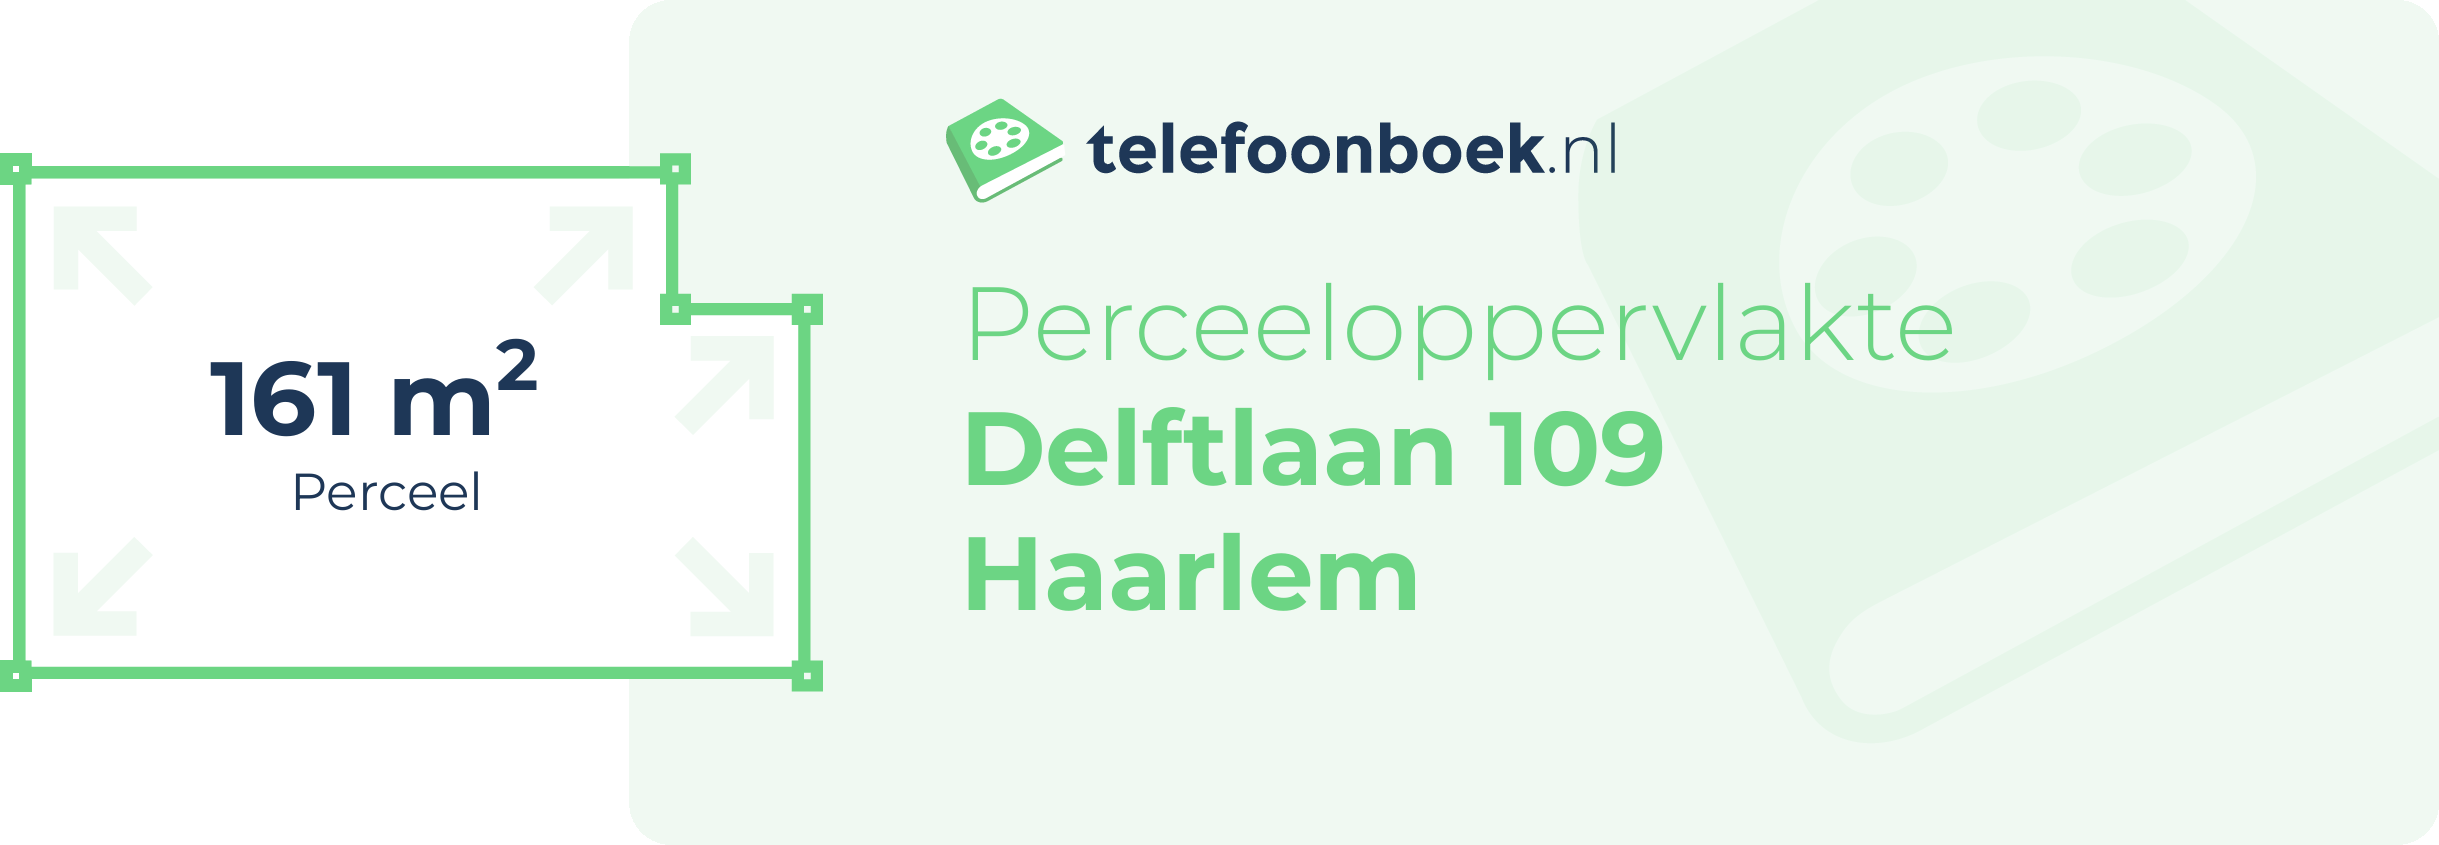 Perceeloppervlakte Delftlaan 109 Haarlem